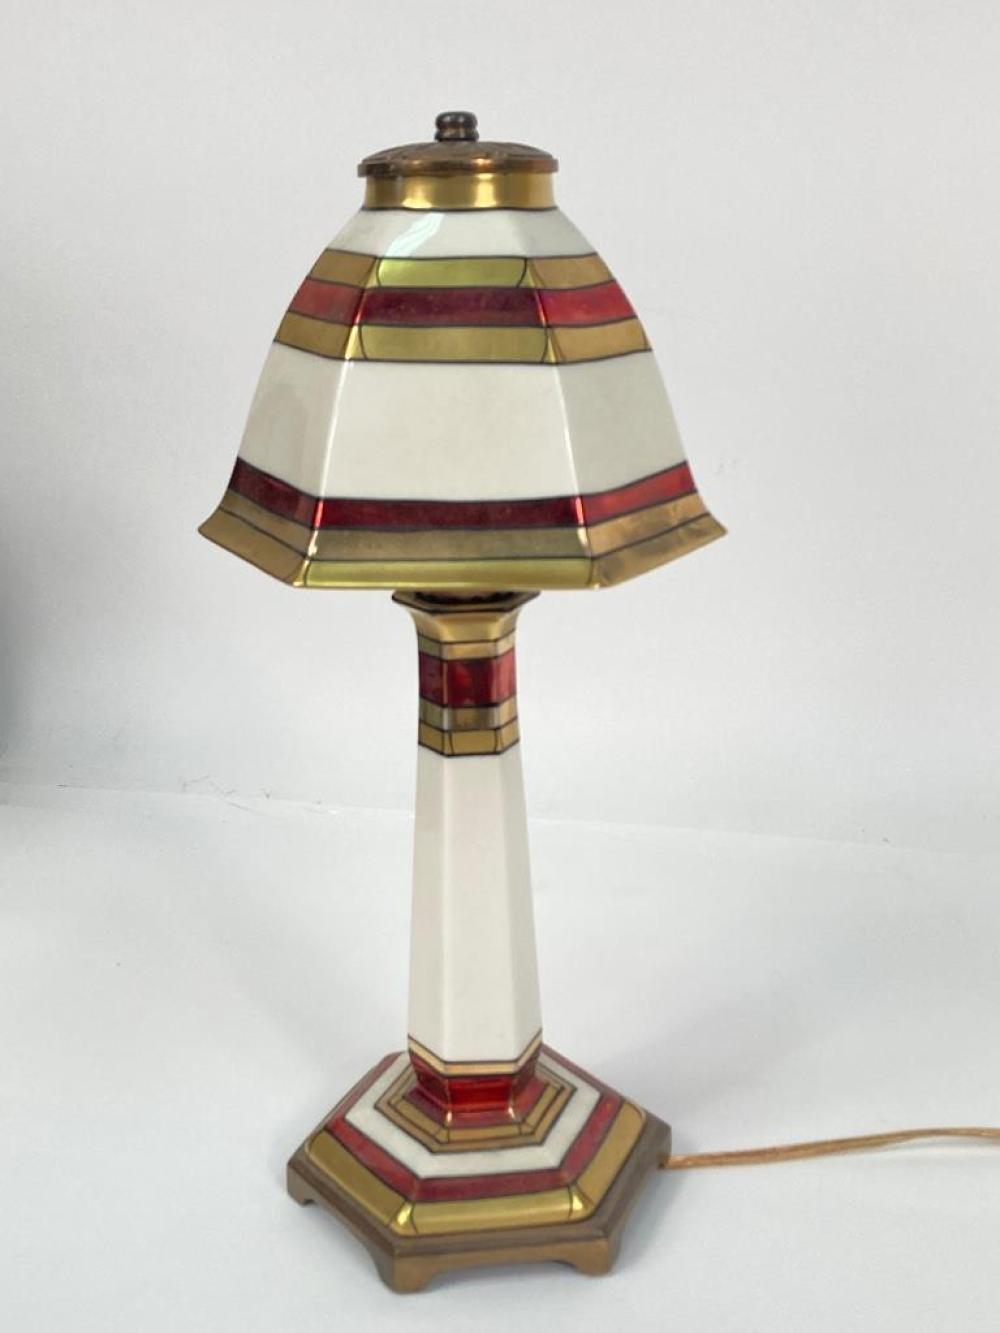 LENOX ART DECO PORCELAIN LAMP WITH